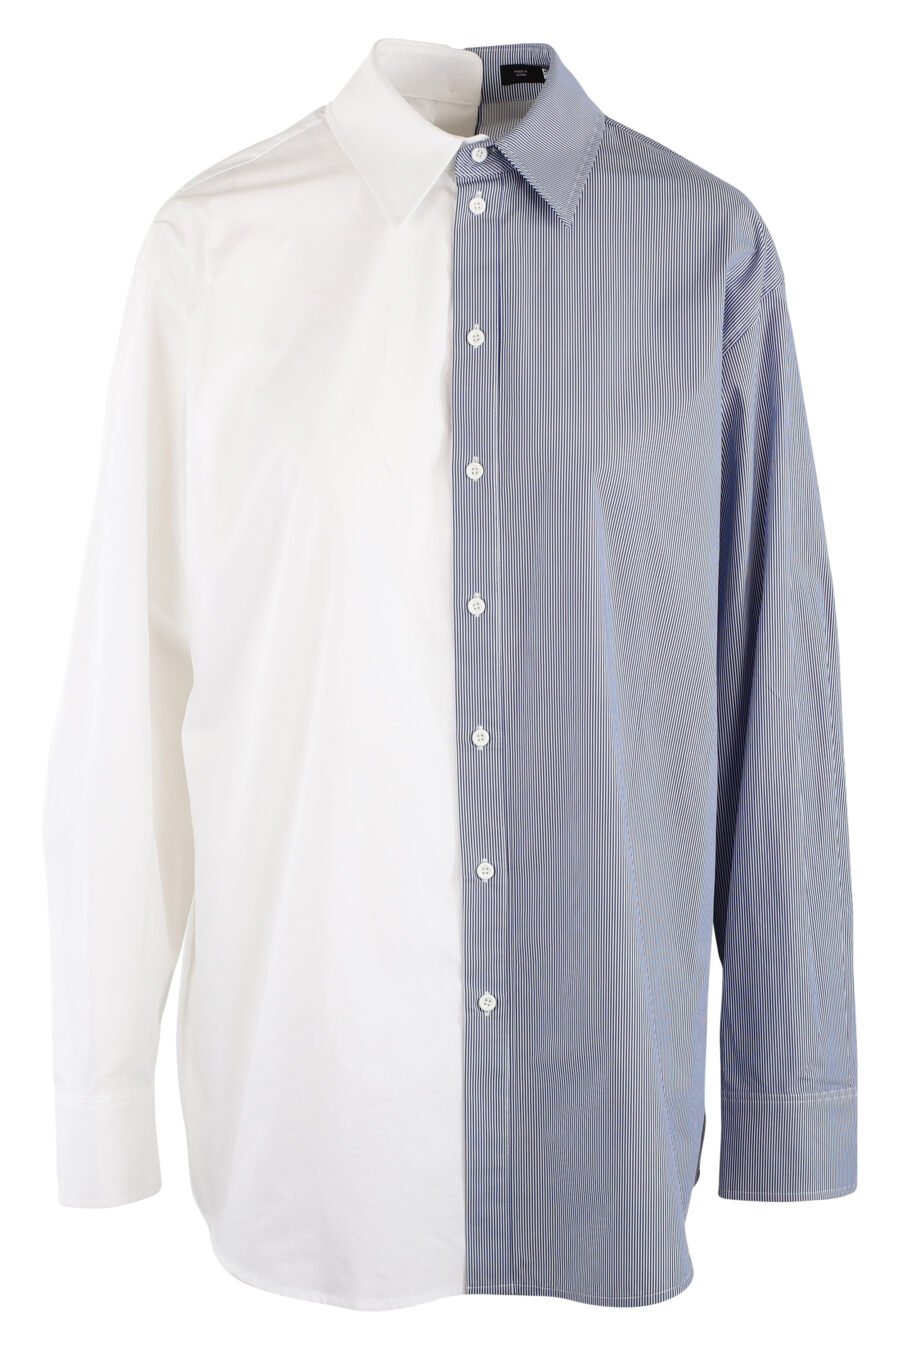 Camisa bicolor blanca y azul - IMG 5494